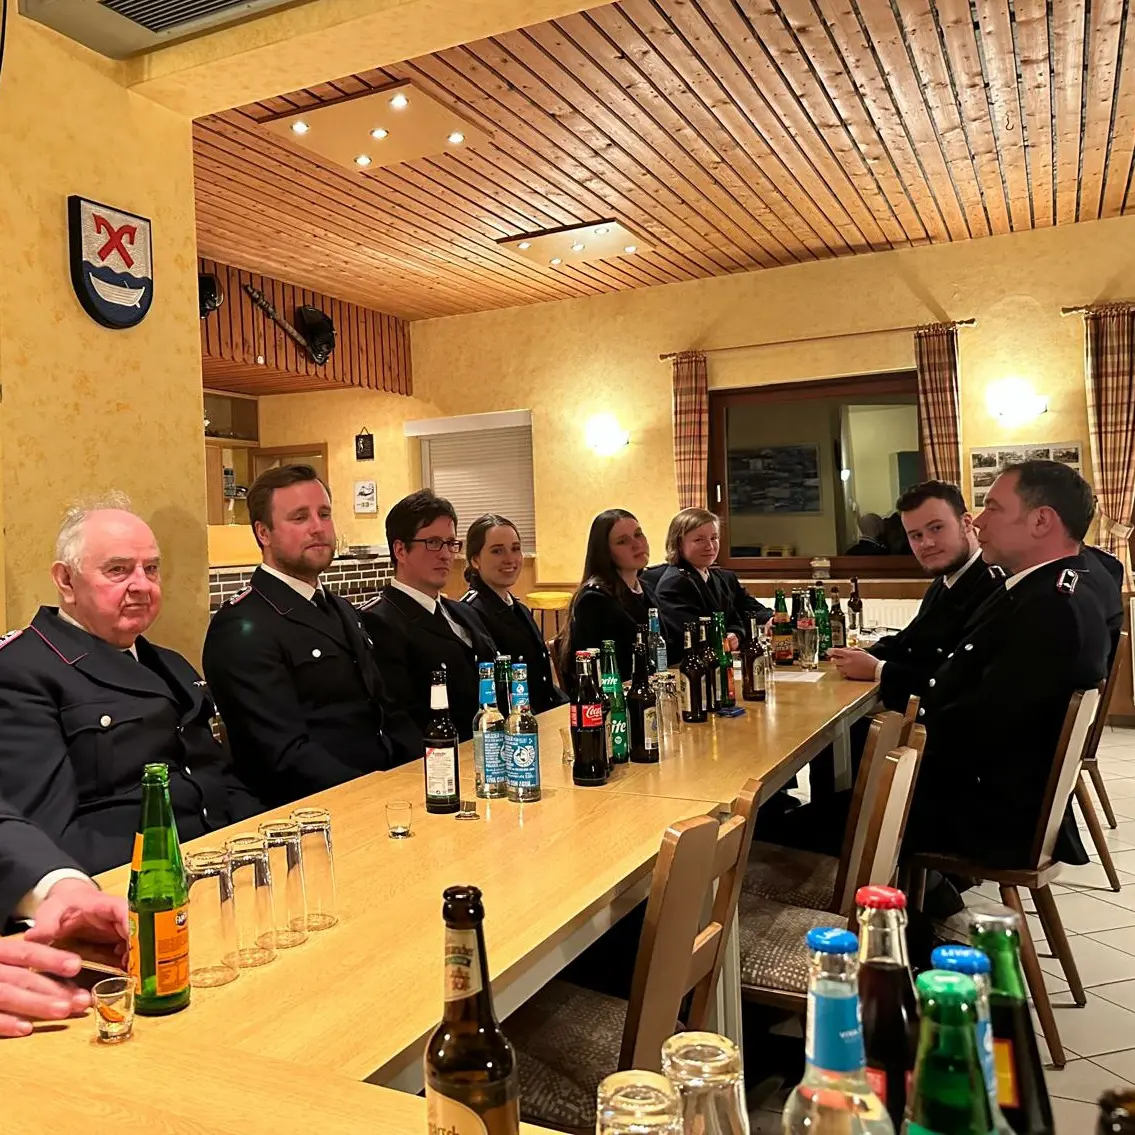 8 Feuerwehrmänner/Frauen sitzen gemeinsam am Tisch